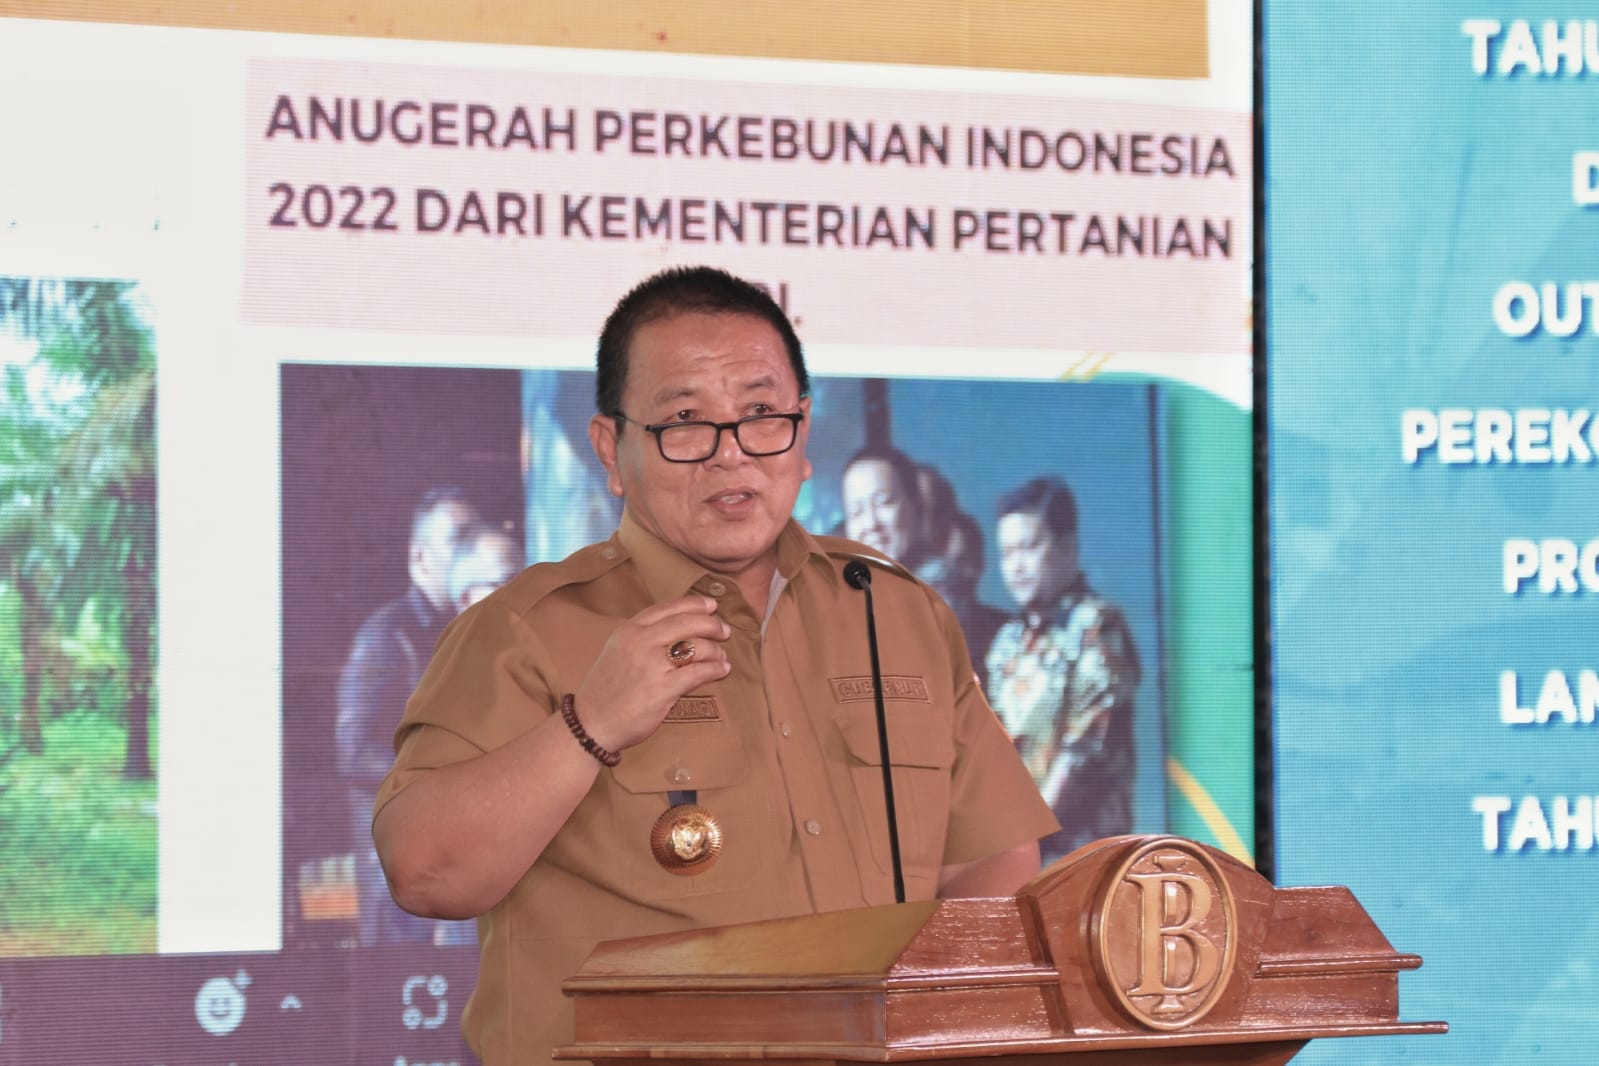 Sejumlah Tokoh, Akademisi dan Praktisi Apresiasi Kinerja Gubernur Lampung 2022 